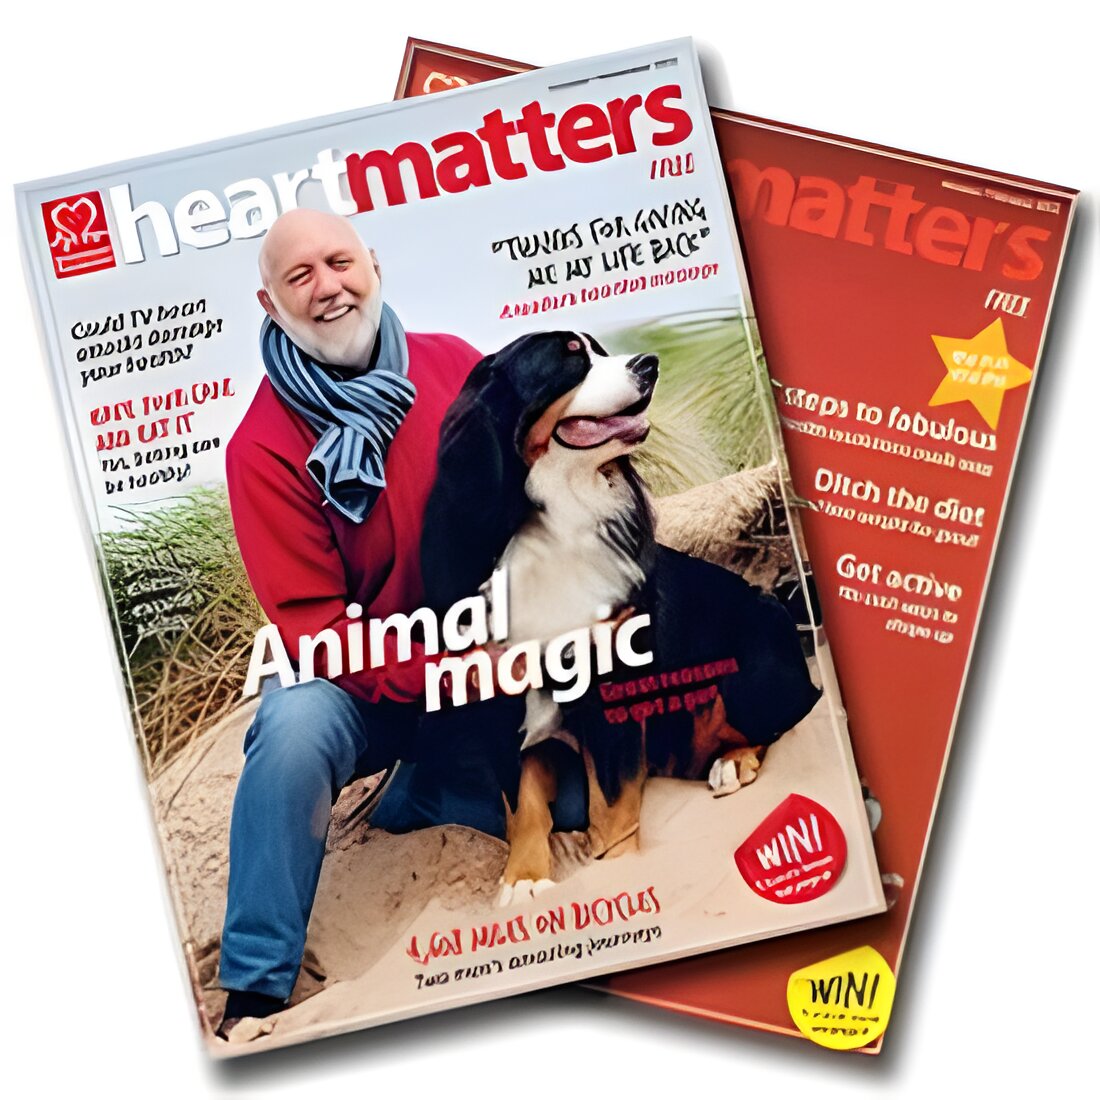 Free Heart Matters Magazine